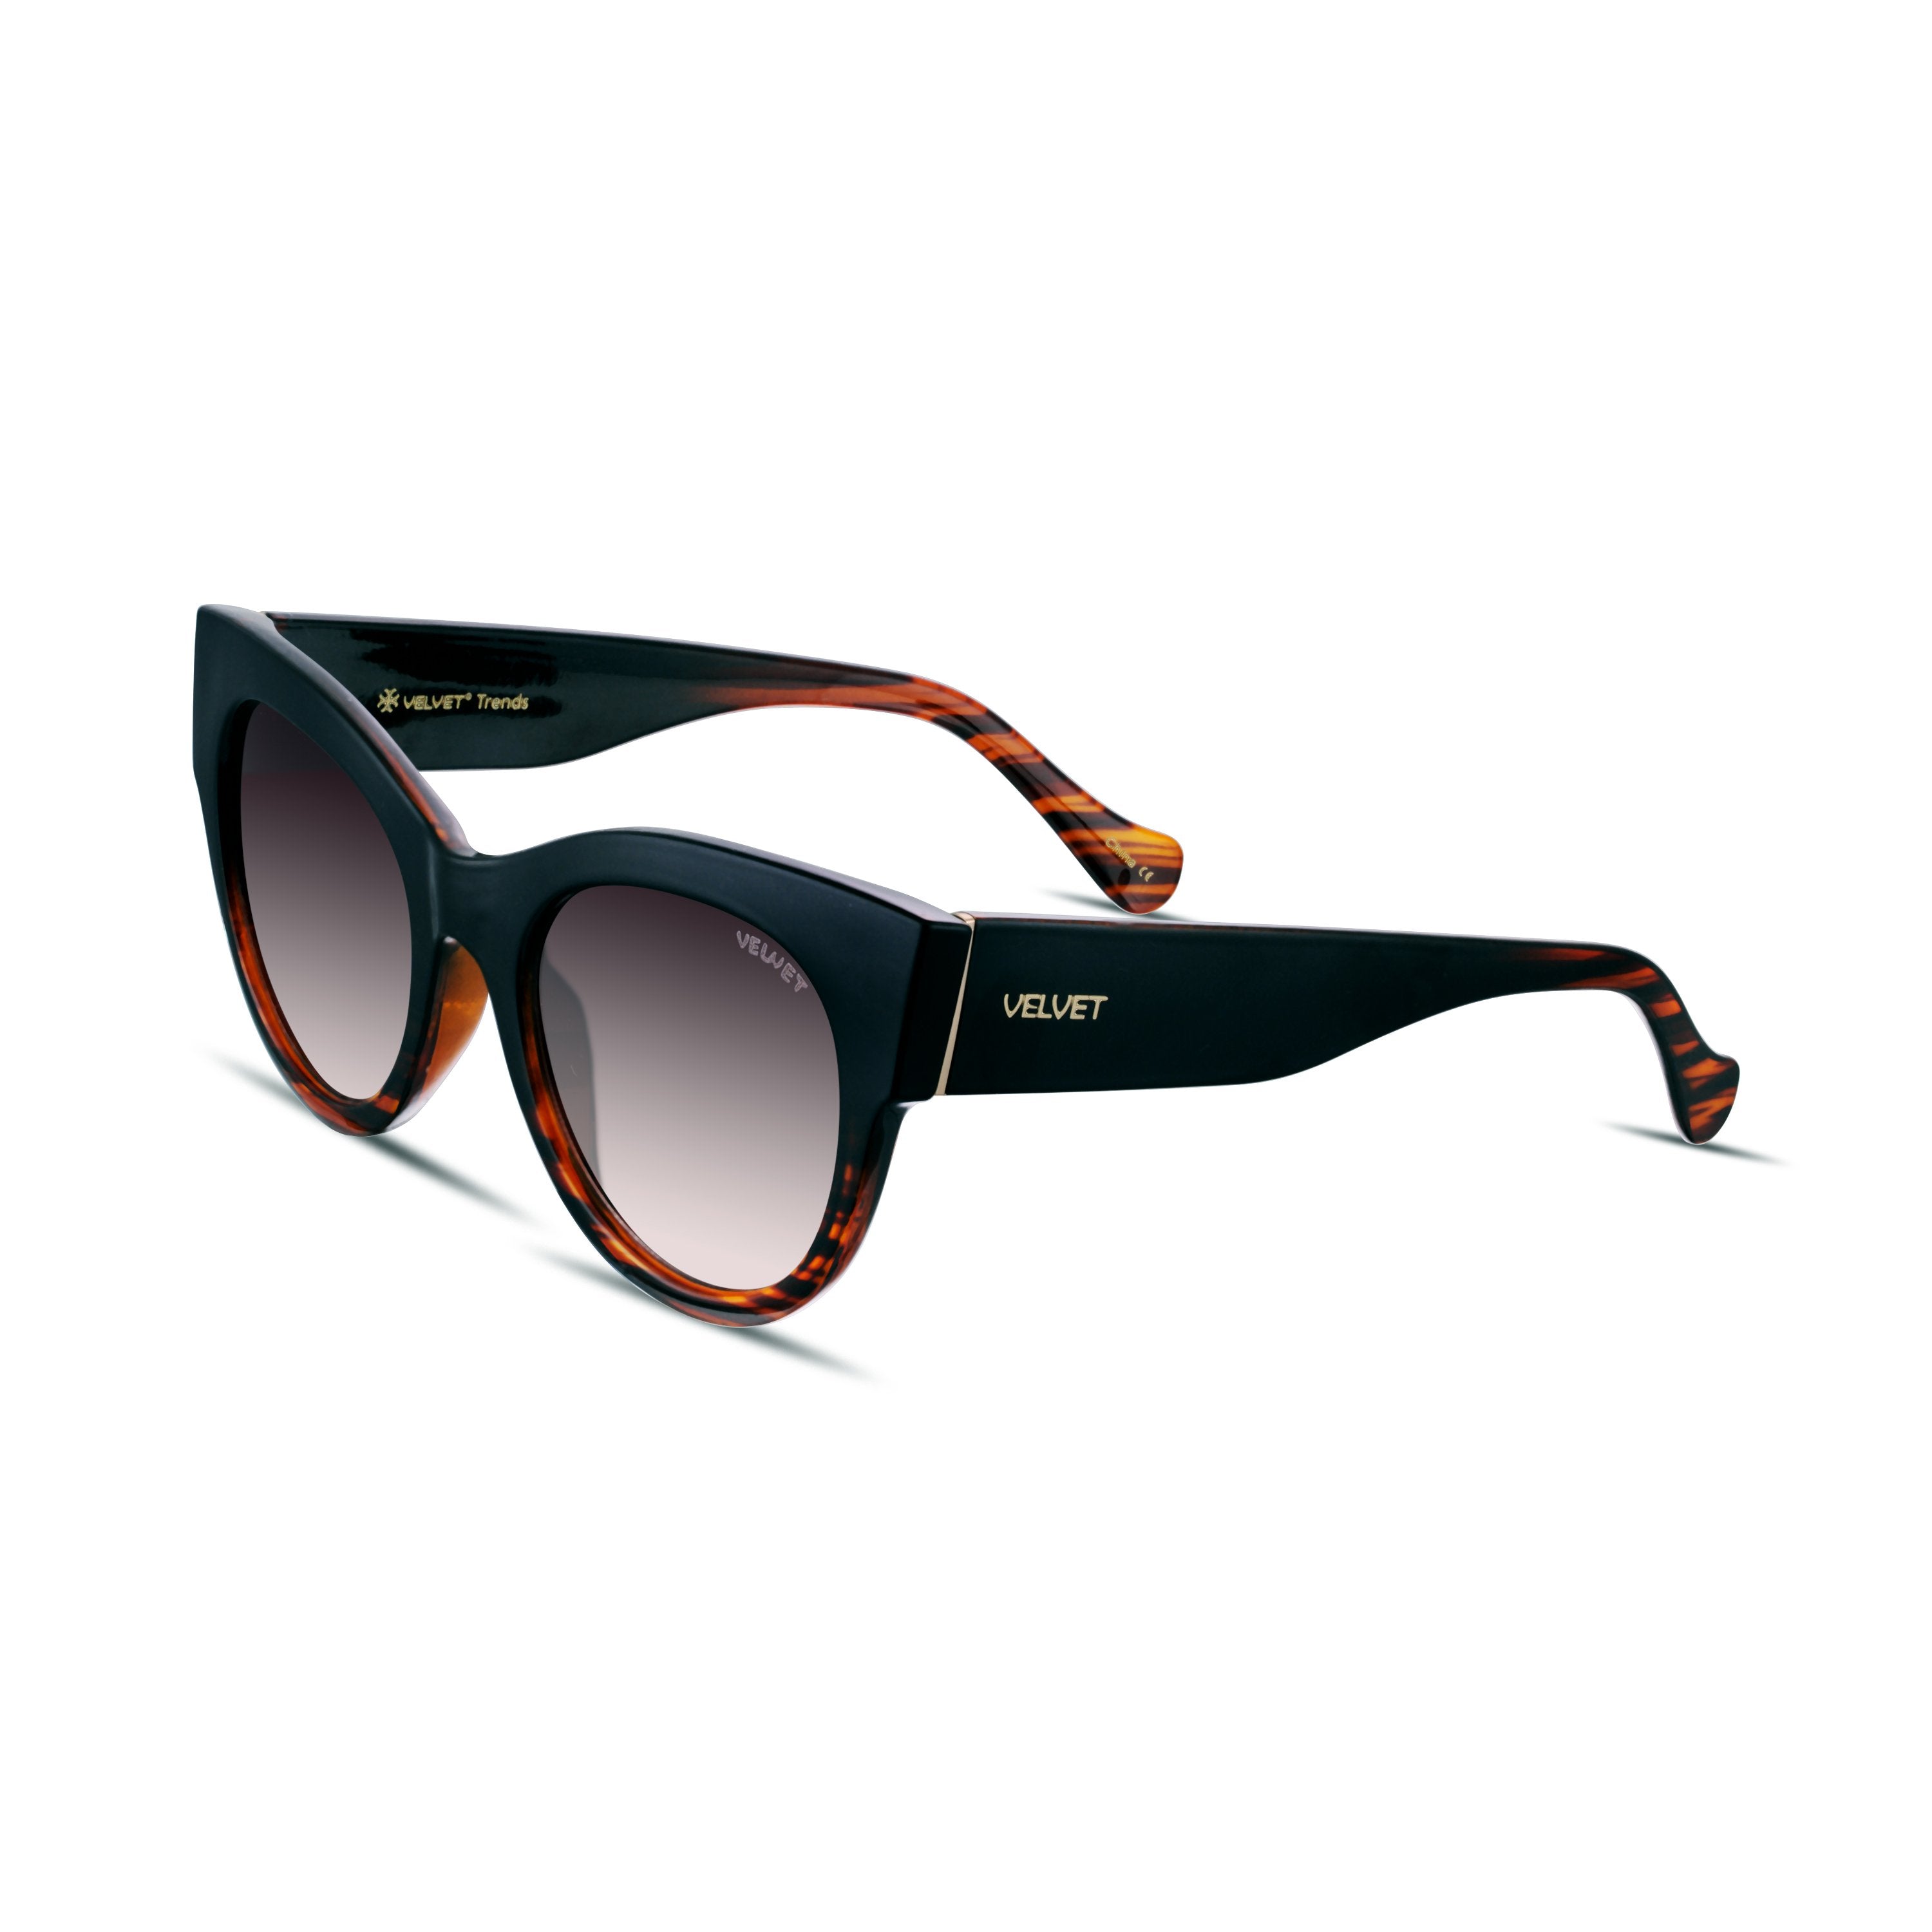 CatGlam Luxe Sun Set - Velvet Eyewear